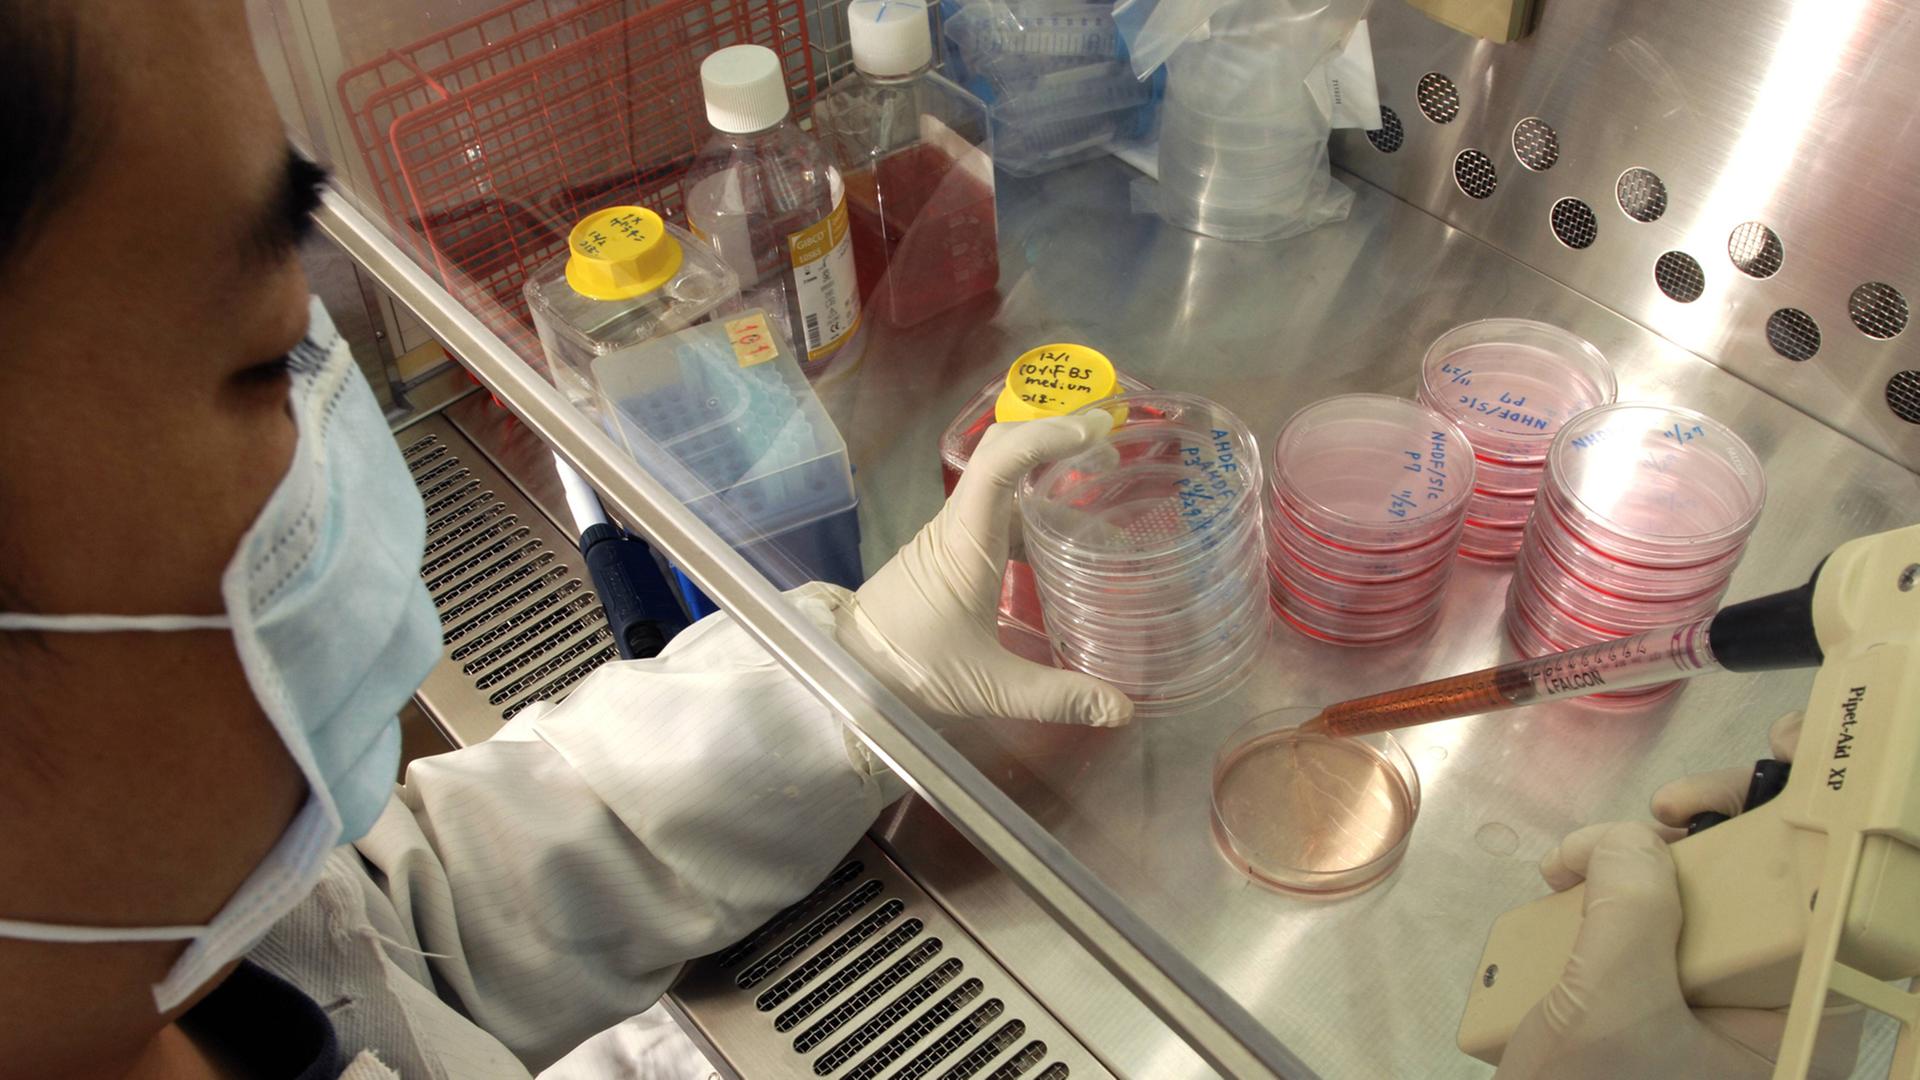 Ein Forscher befüllt in einem Labor Petrischalen mit Stammzellen.